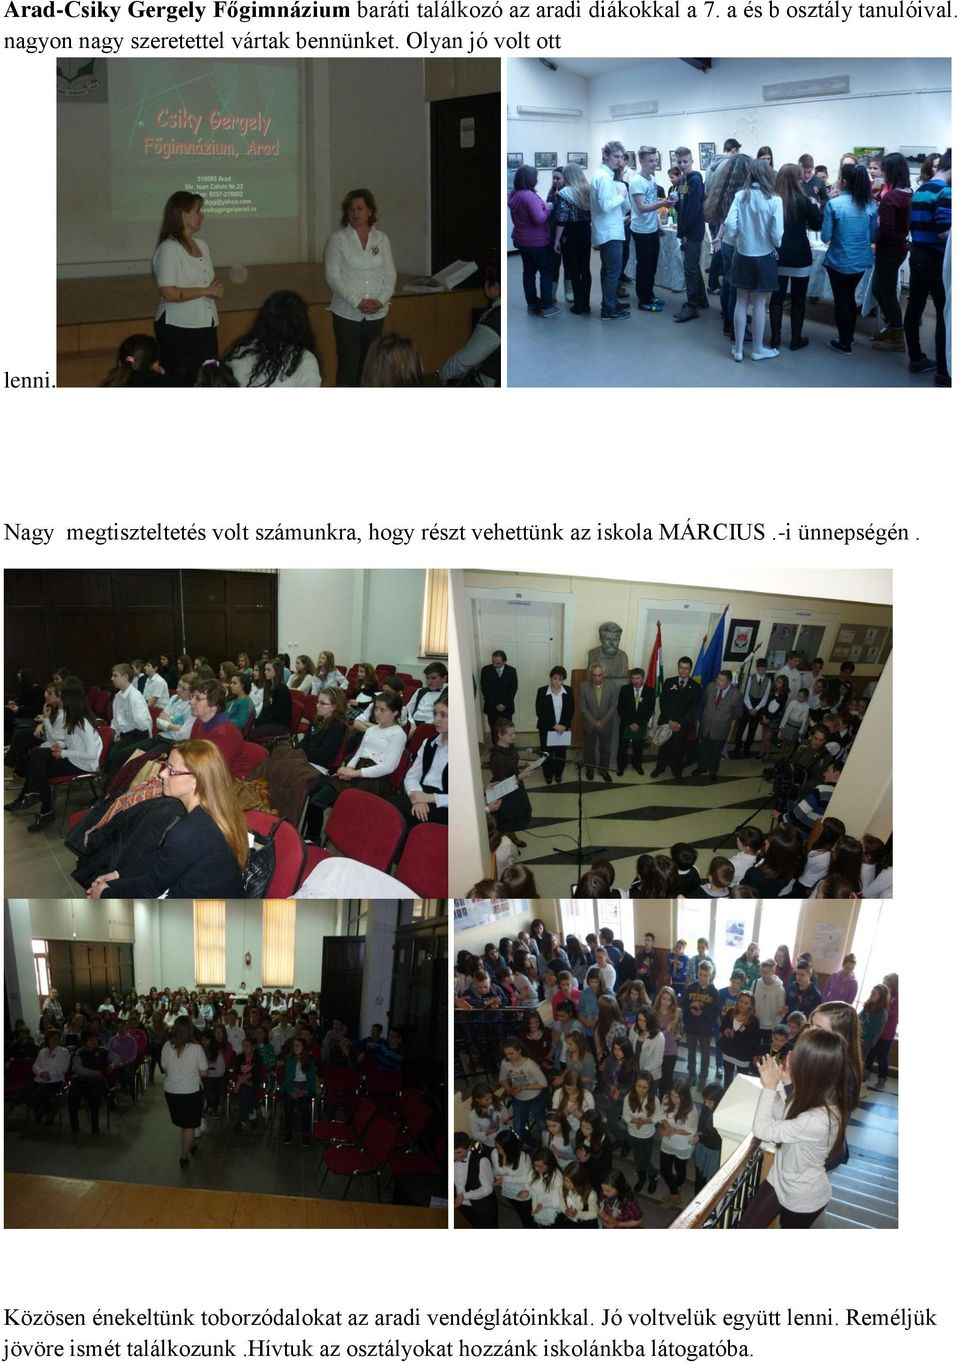 Nagy megtiszteltetés volt számunkra, hogy részt vehettünk az iskola MÁRCIUS.-i ünnepségén.